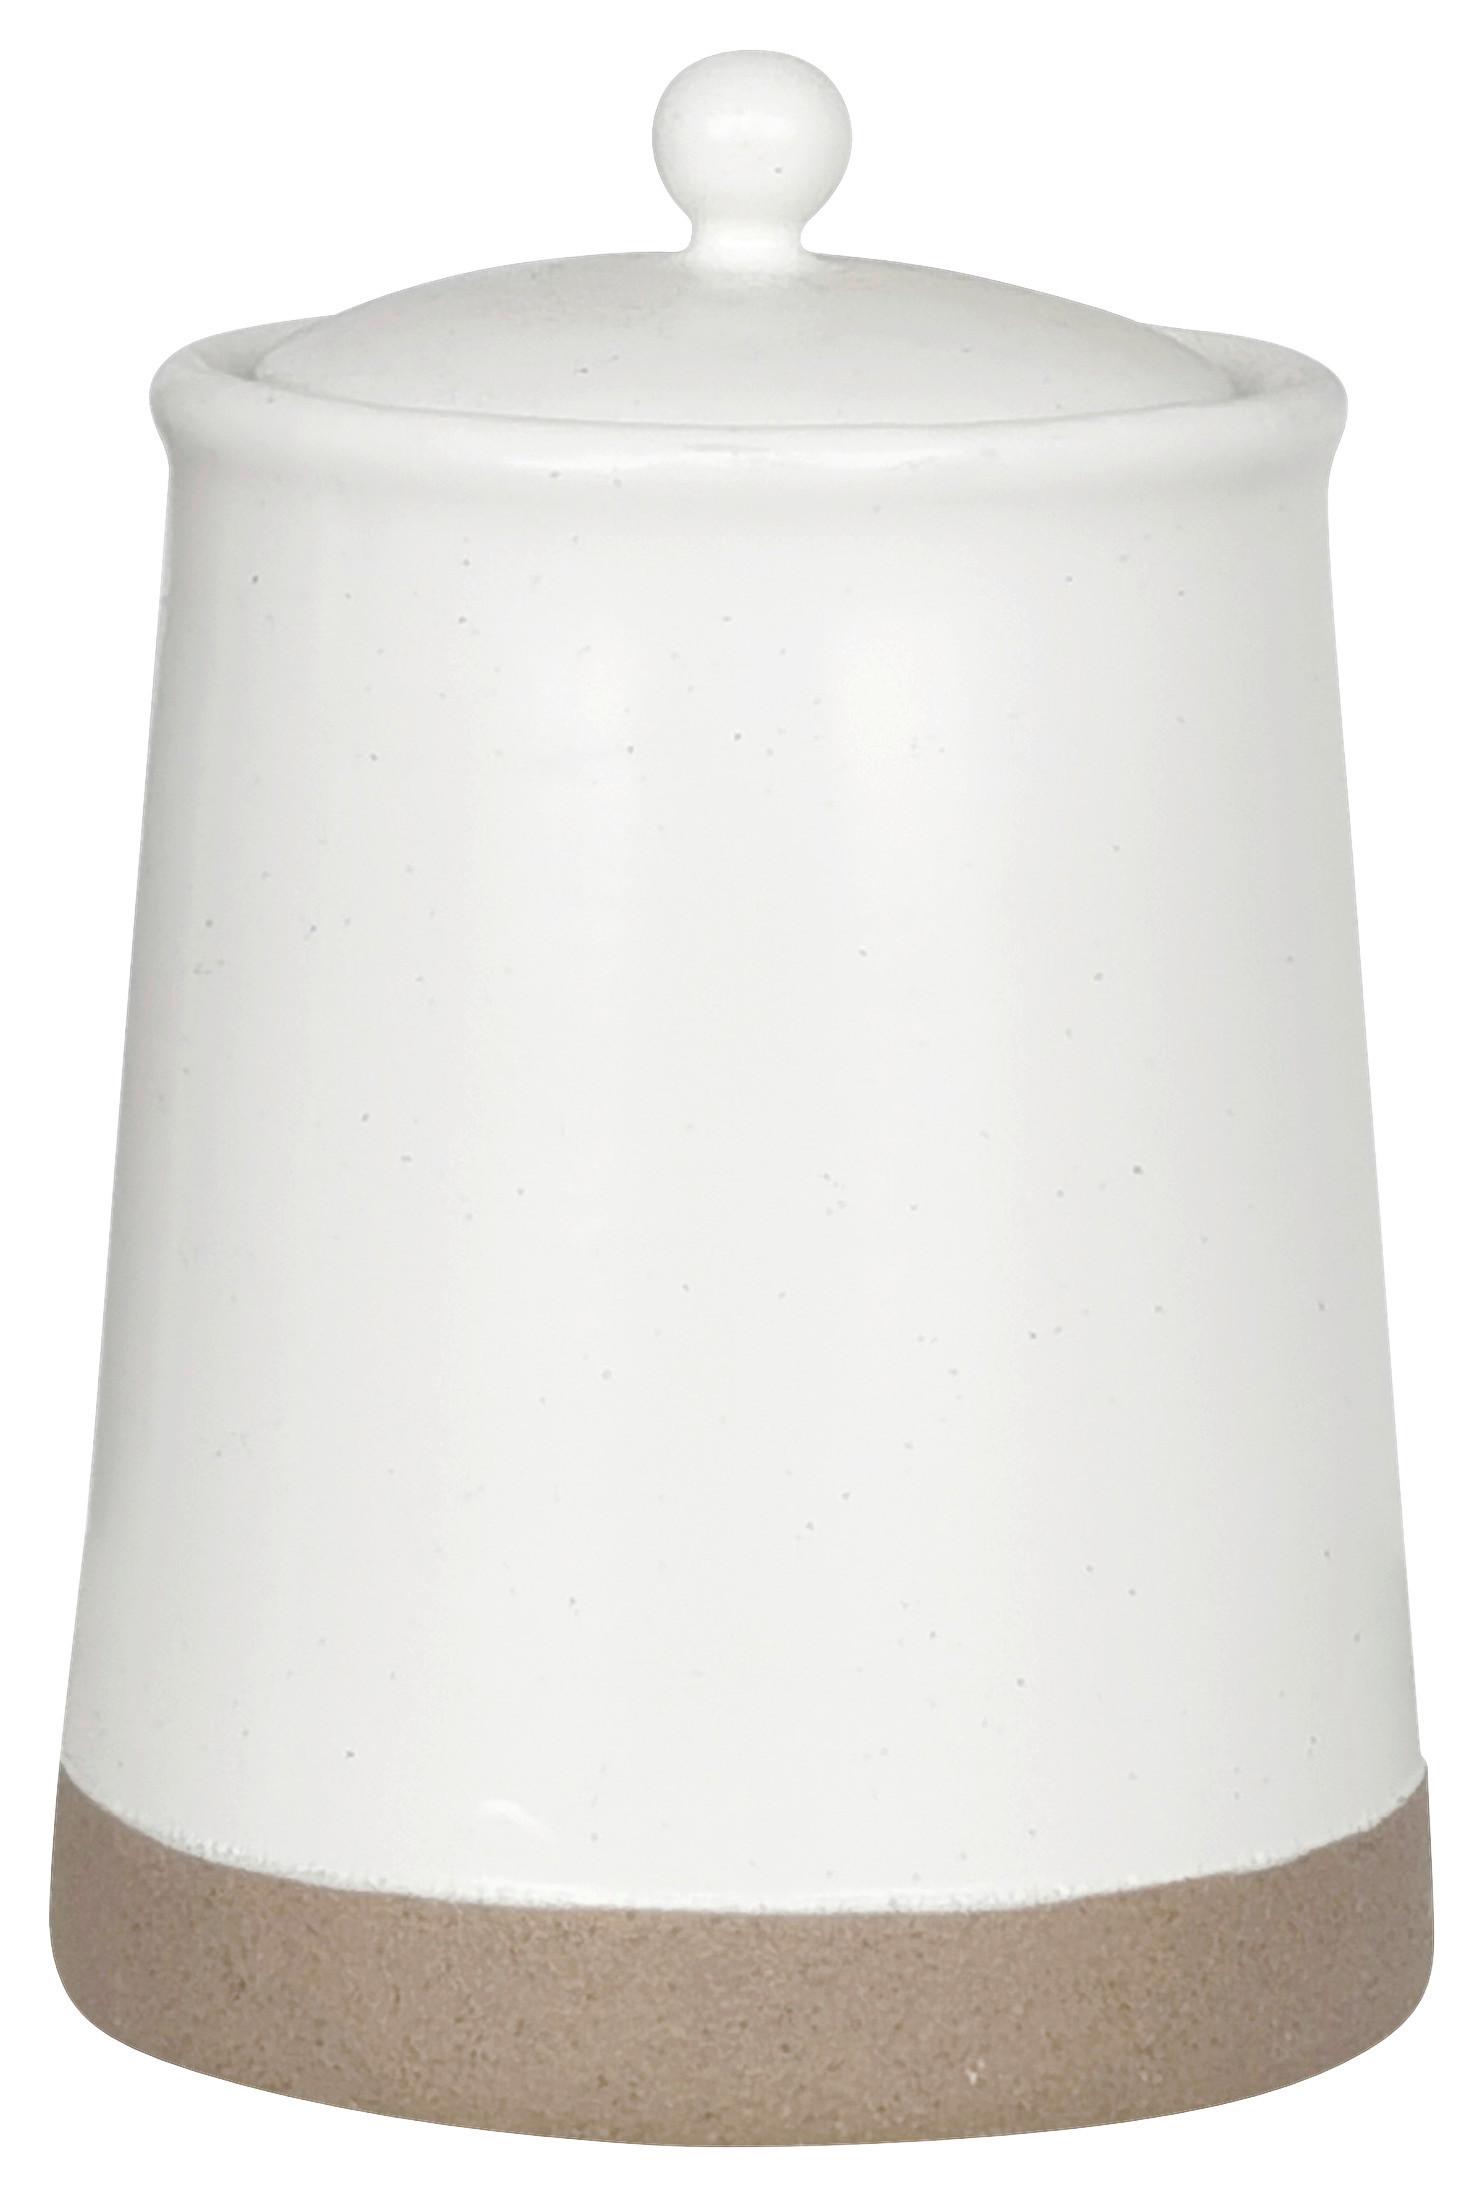 Vorratsdose Emilia ca. 400ml - Weiß, Keramik/Kunststoff (9/12,5cm) - Zandiara